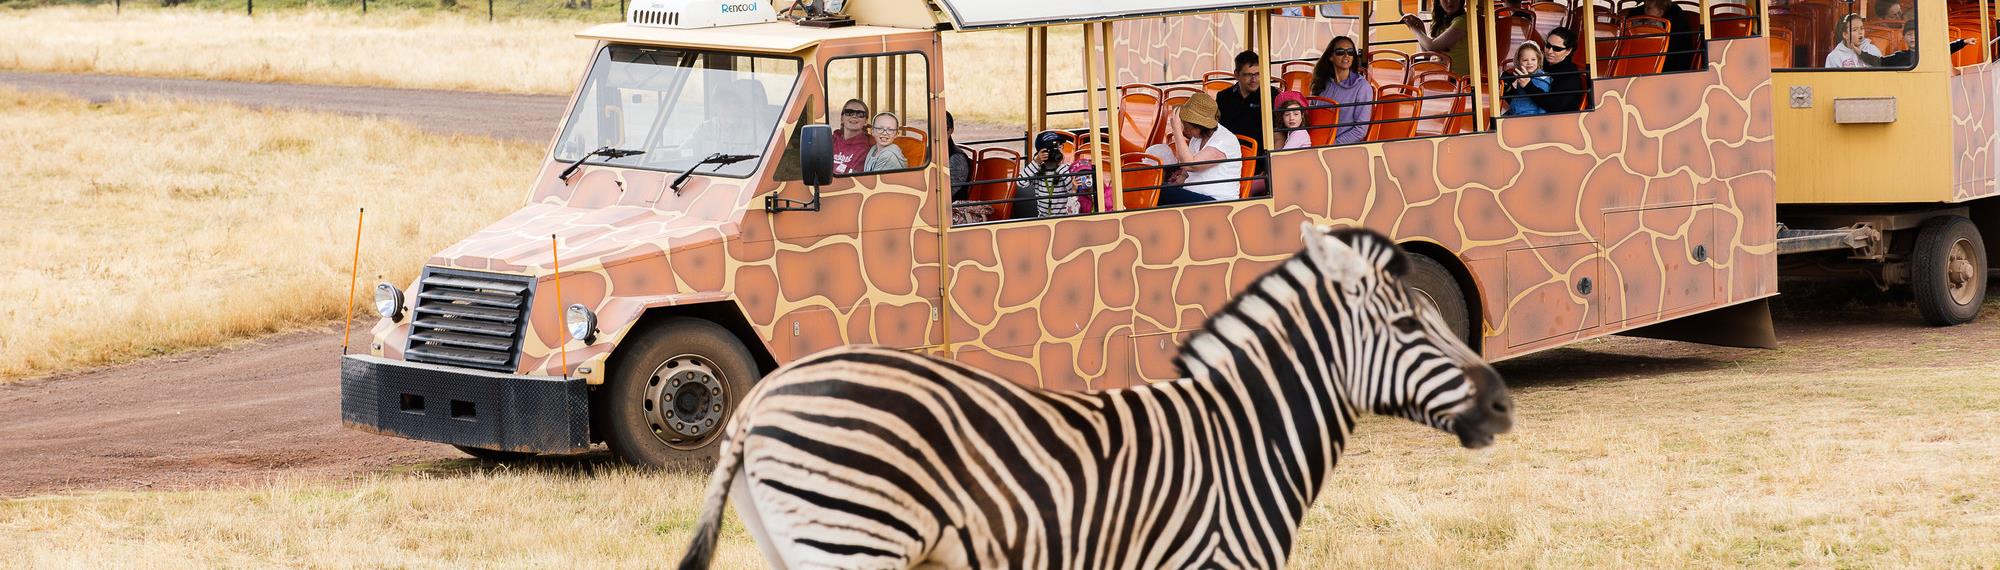 Visitors on a safari bus looking at a zebra on the Savannah at Werribee Zoo.